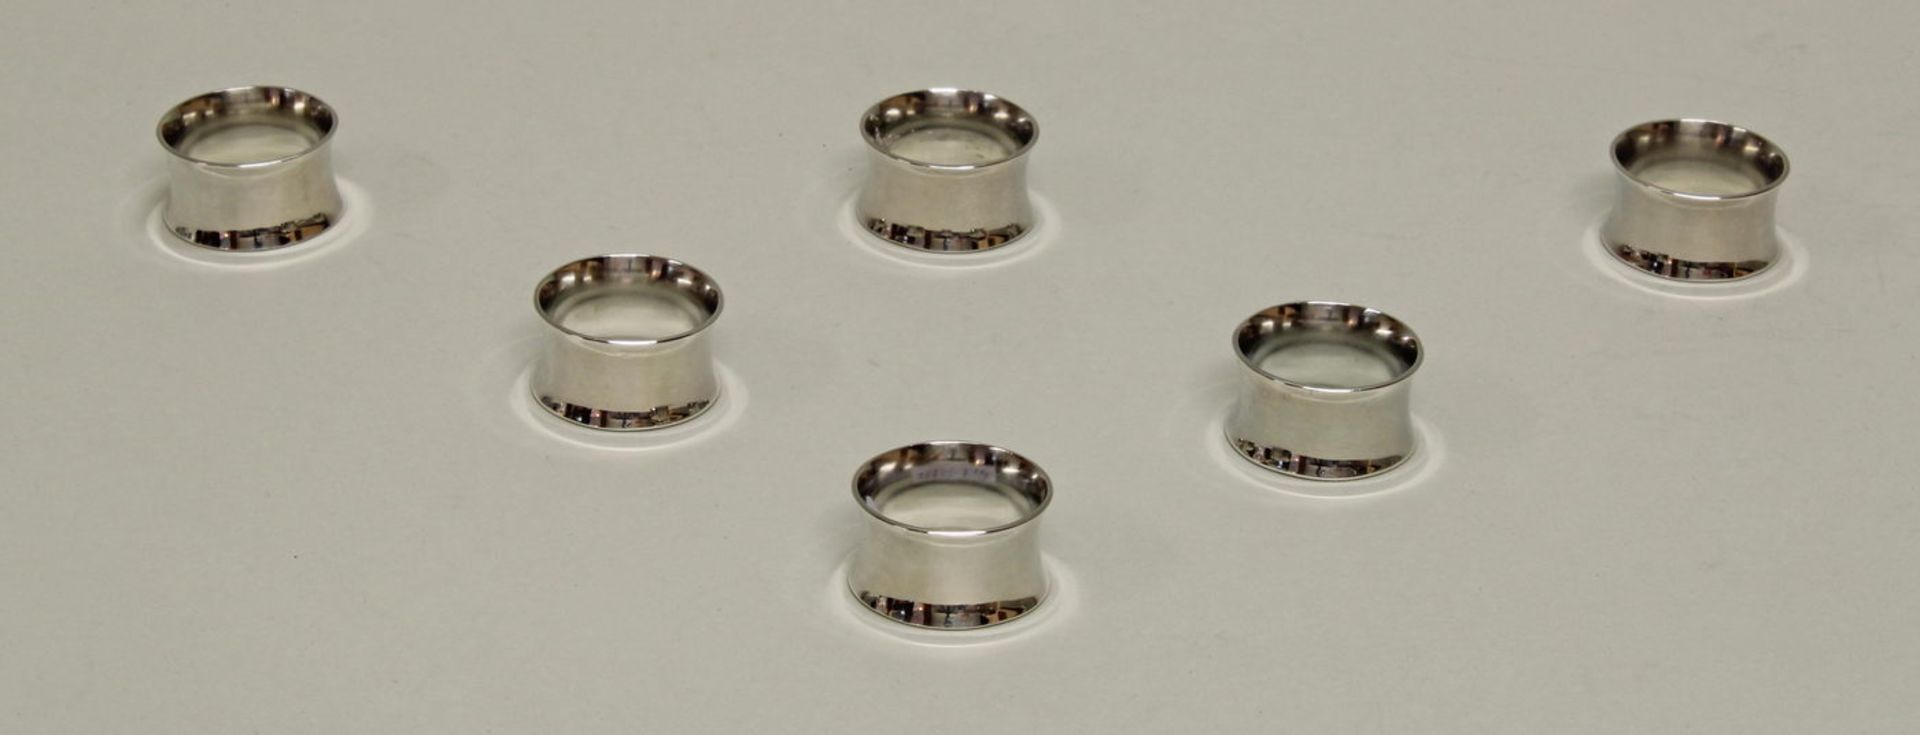 6 Serviettenringe, Silber 800, glatt, konisch eingezogen, 1.5 cm hoch, ø 2.7 cm, zus. ca. 65 g